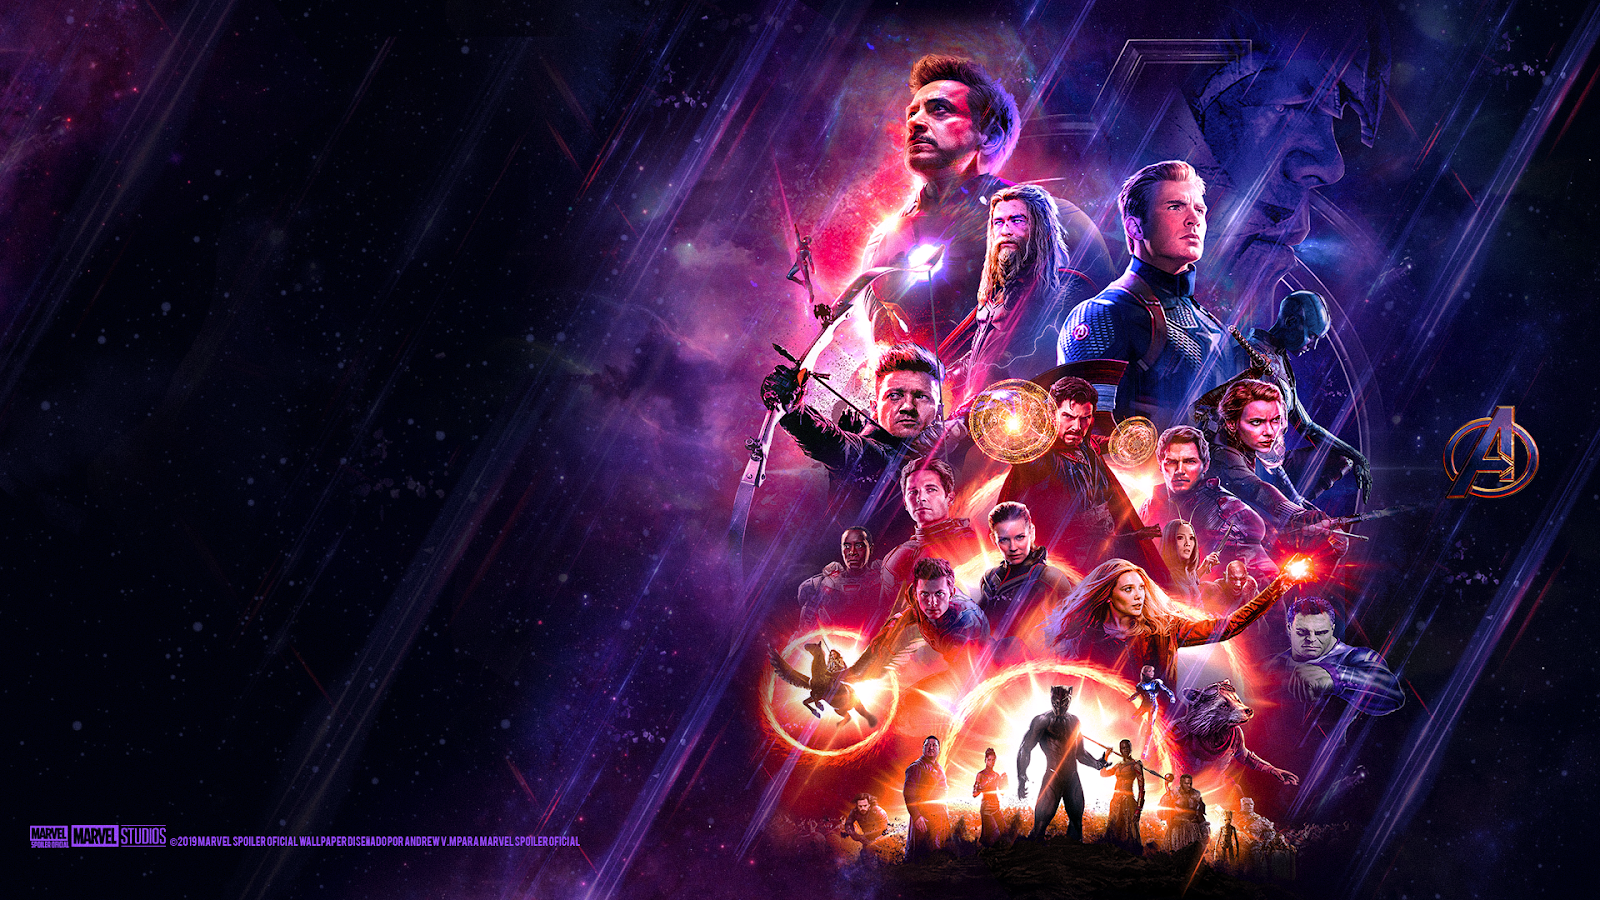 Avengers endgame portals poster